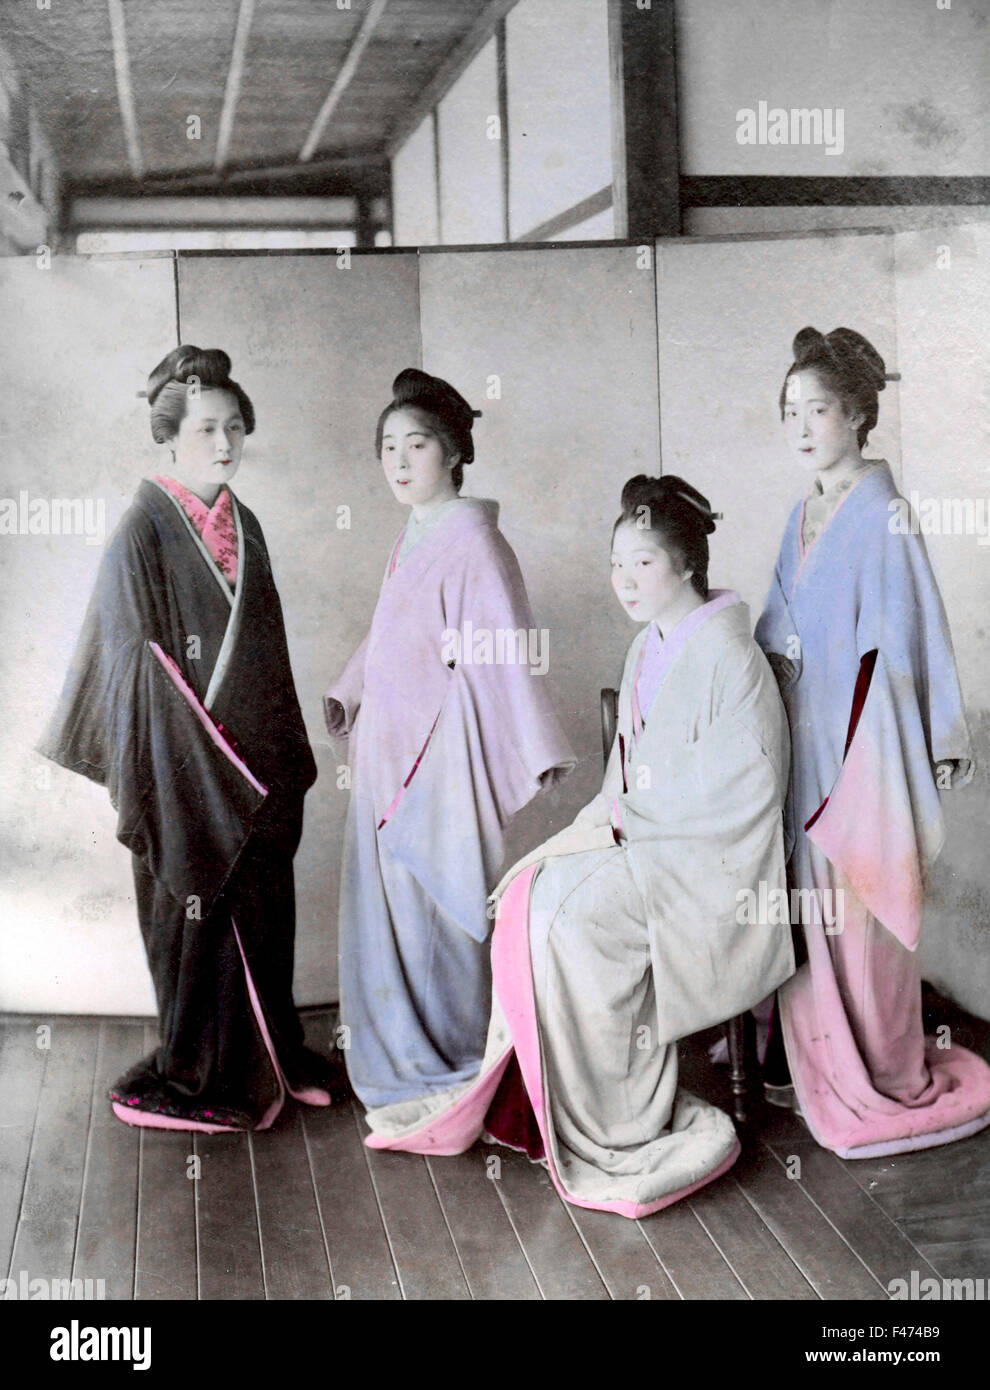 Four geishas, Yokohma, Japan Stock Photo